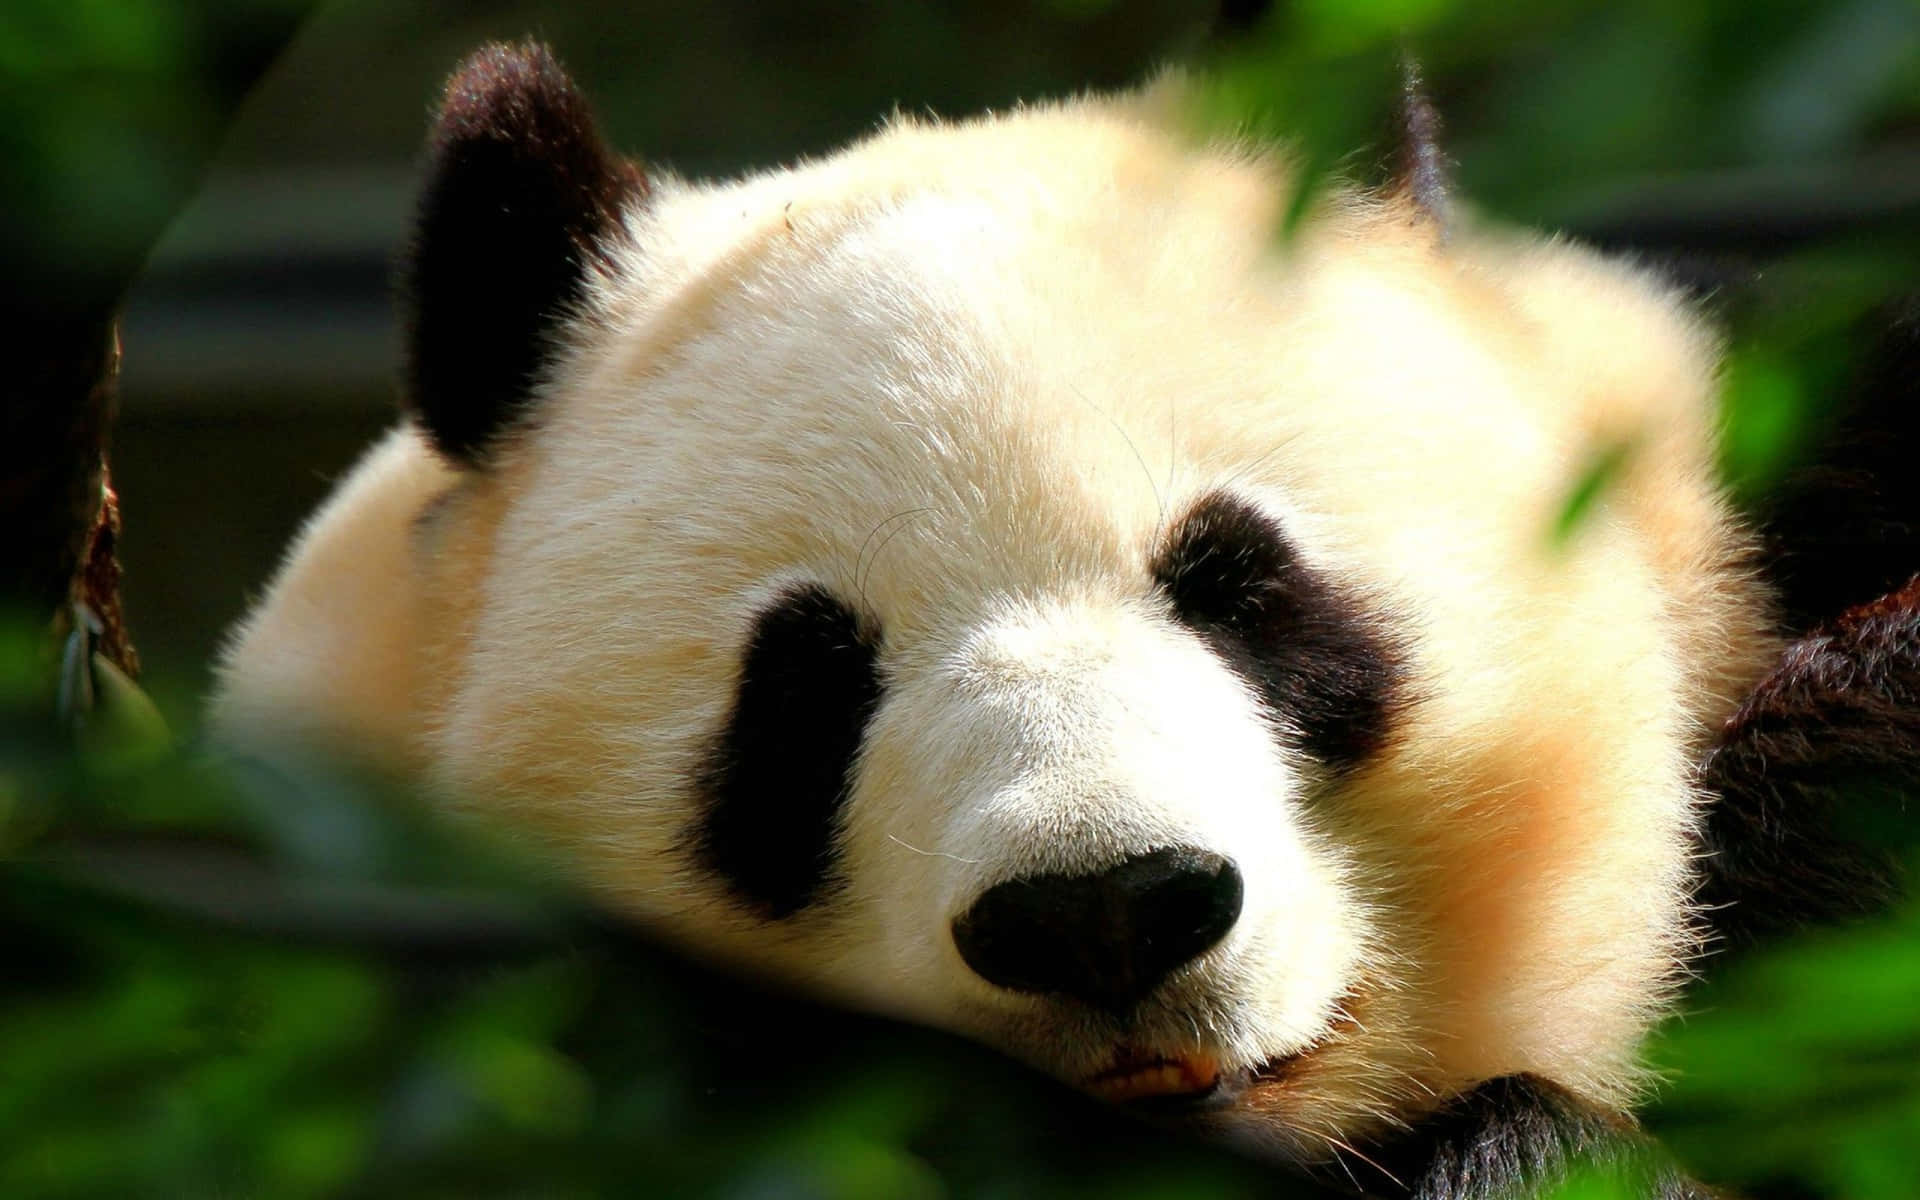 Imagenun Tierno Panda Gigante Descansa En Su Hábitat Natural.